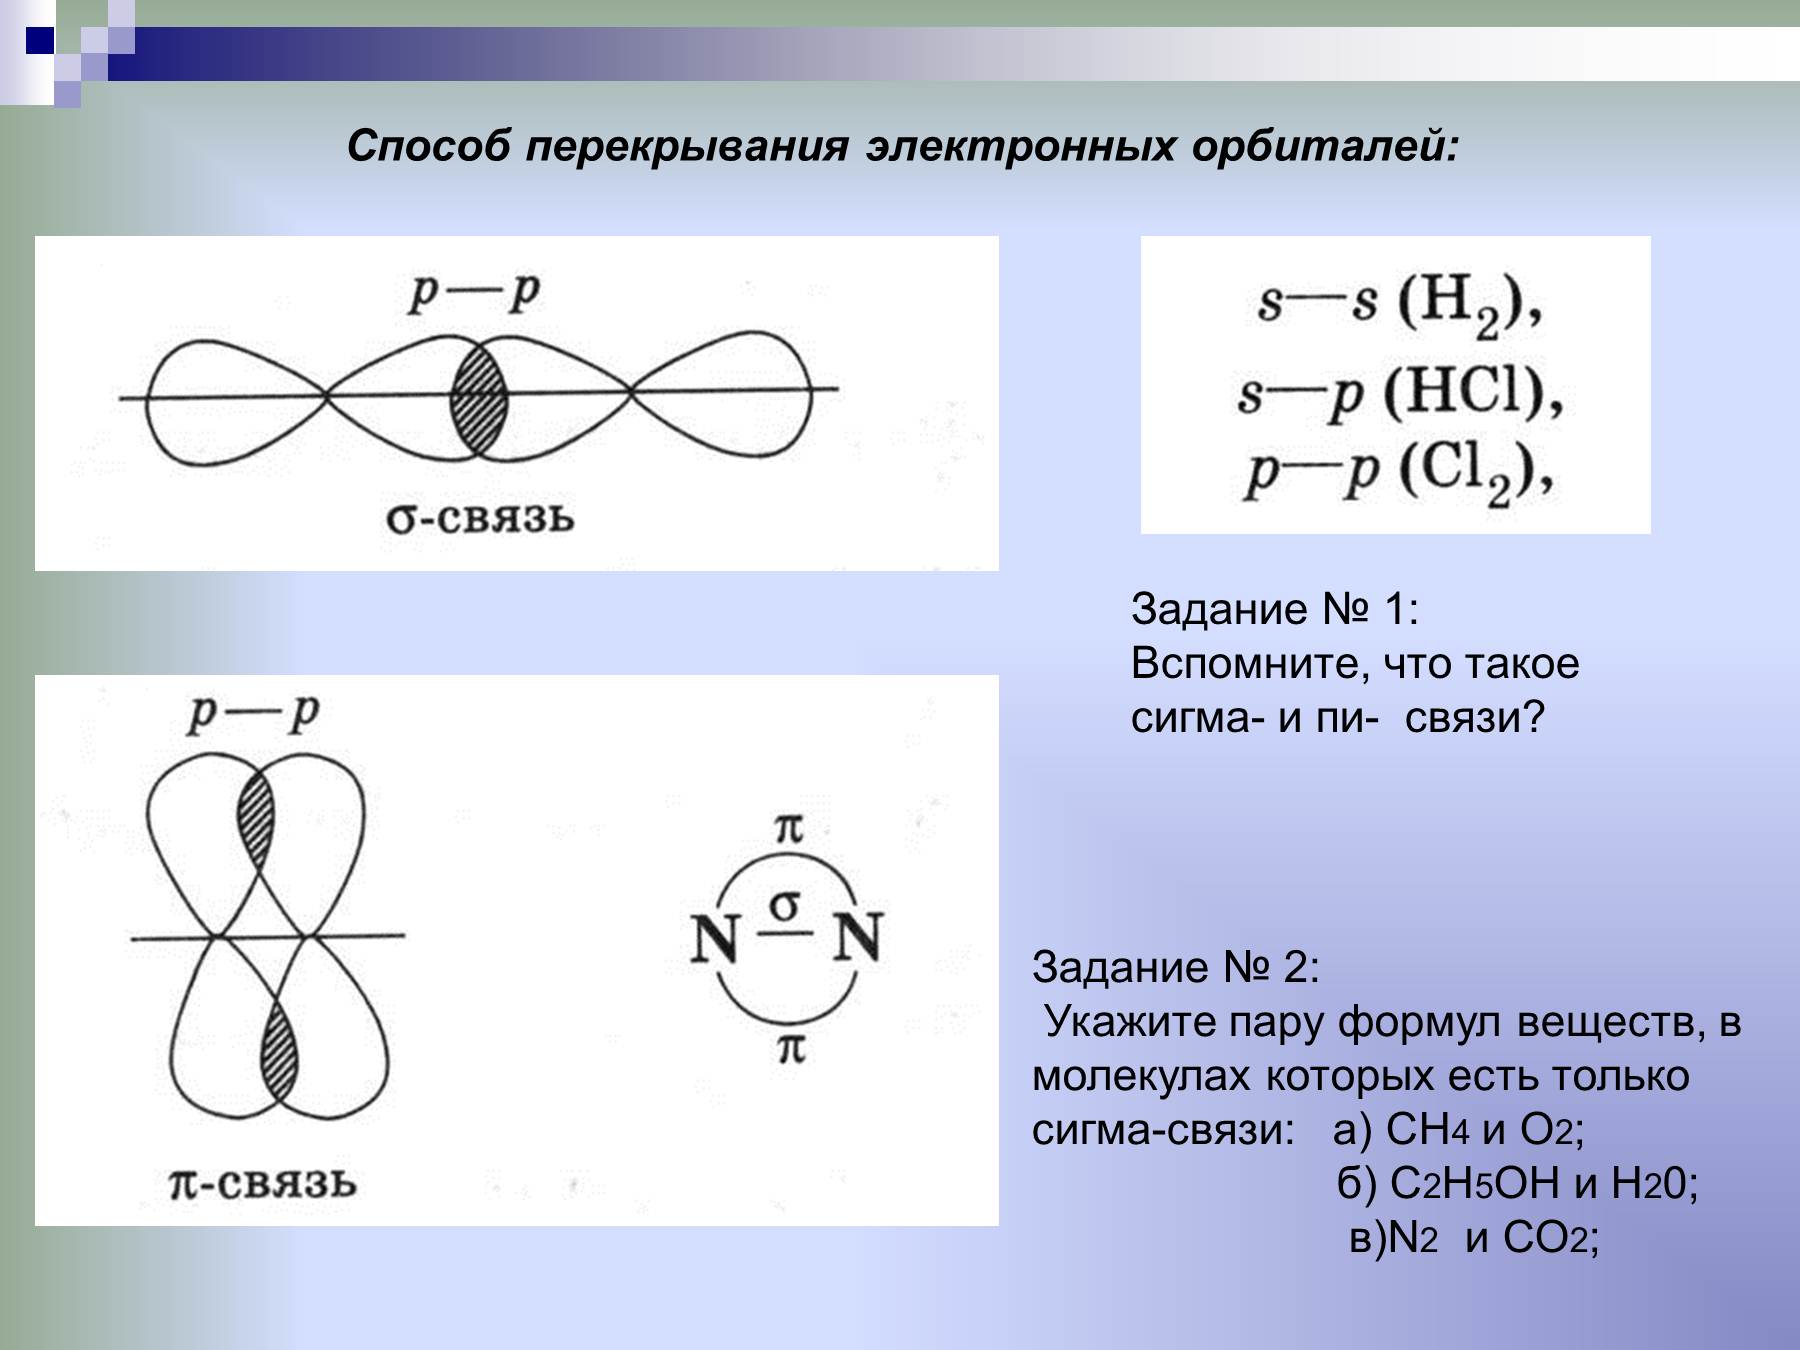 Образование сигма. Типы химических связей пи и Сигма. Схема образования Сигма связи. Способы перекрывания электронных орбиталей (Сигма, пи). Схема перекрывания электронных облаков i2.